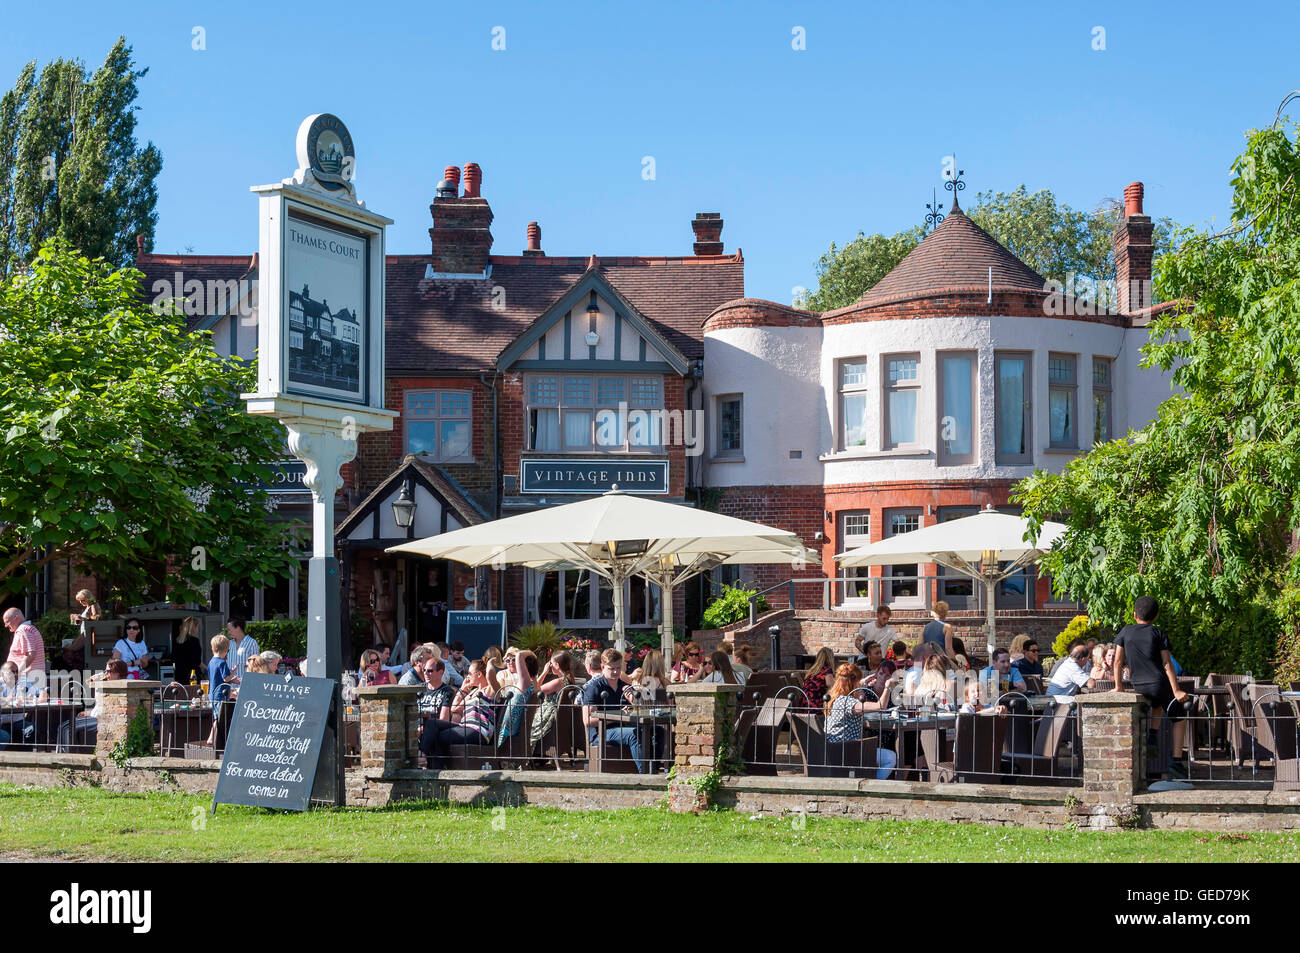 La Cour Thames Pub sur Tamise, halage, Shepperton, Surrey, Angleterre, Royaume-Uni Banque D'Images